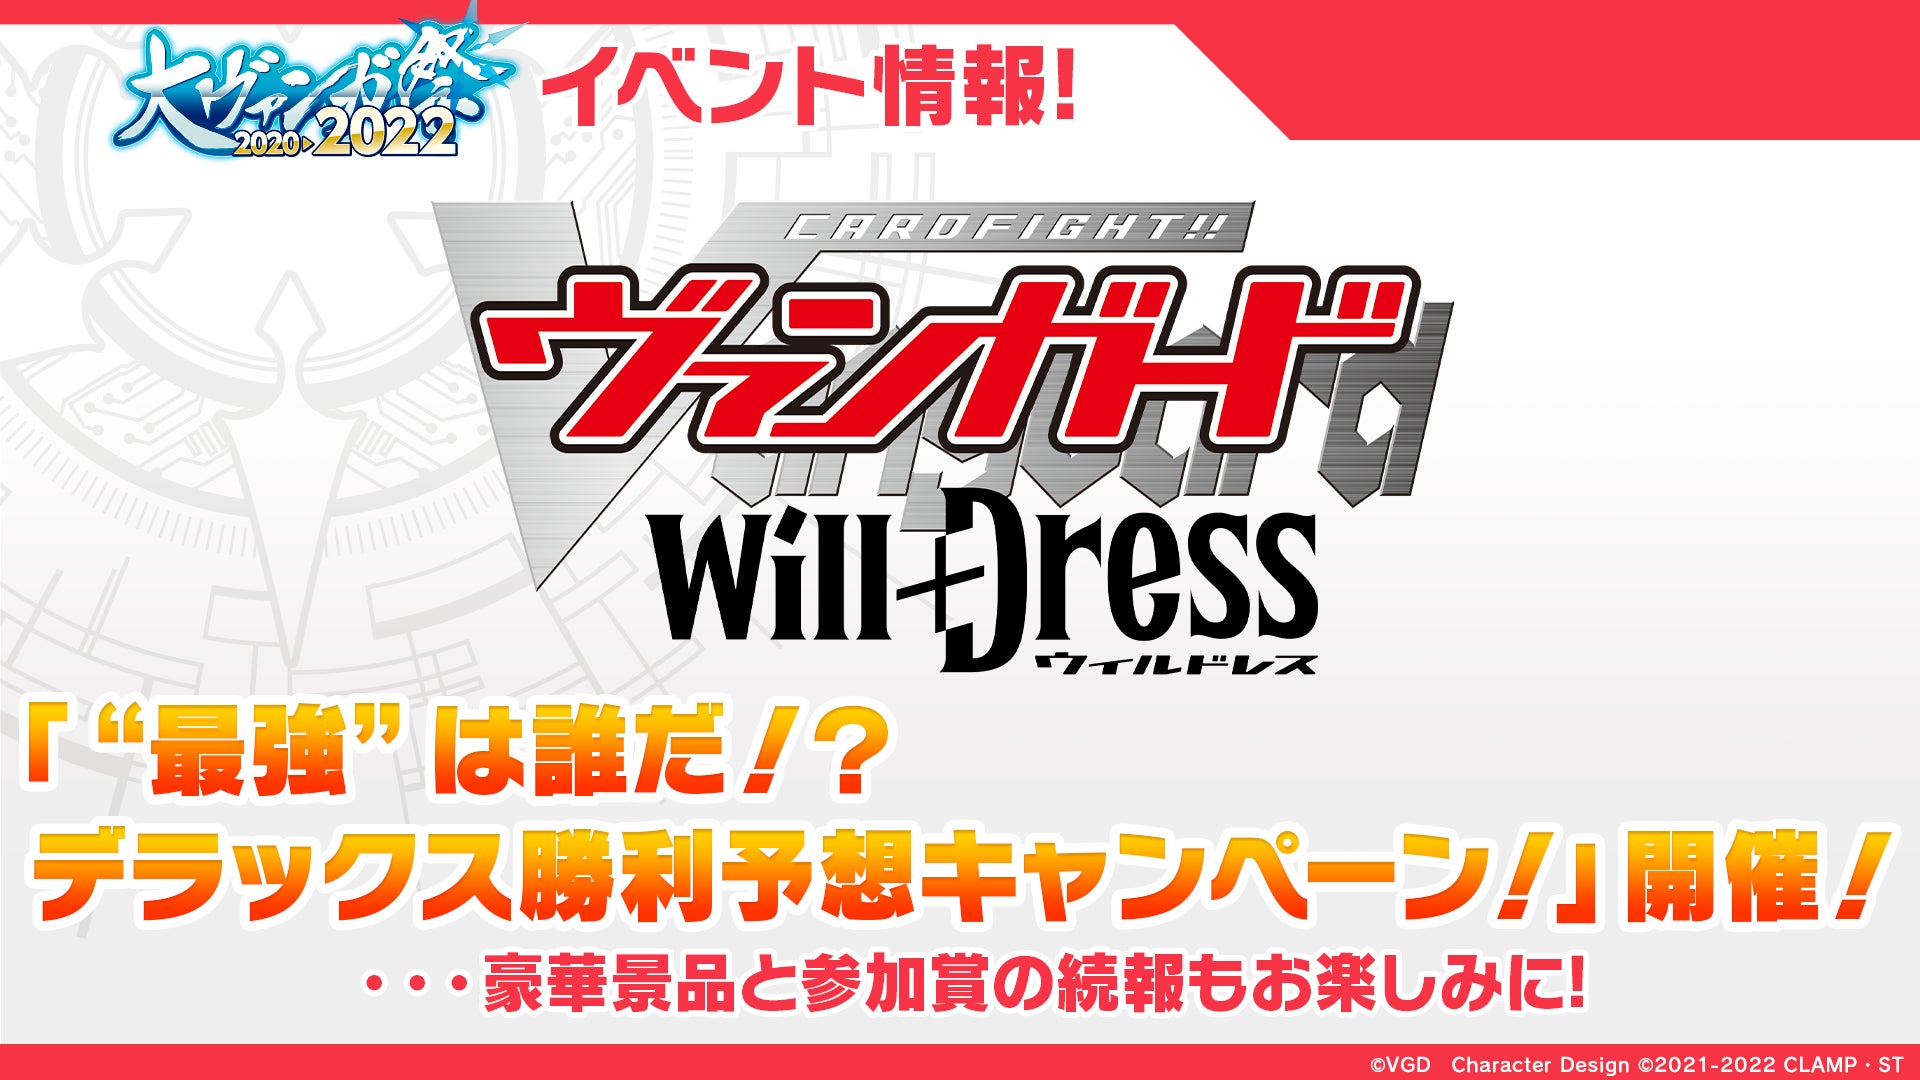 アニメ「カードファイト!! ヴァンガード will+Dress」勝利予想キャンペーンの開催が決定！大会出場キャラクターを一部公開！